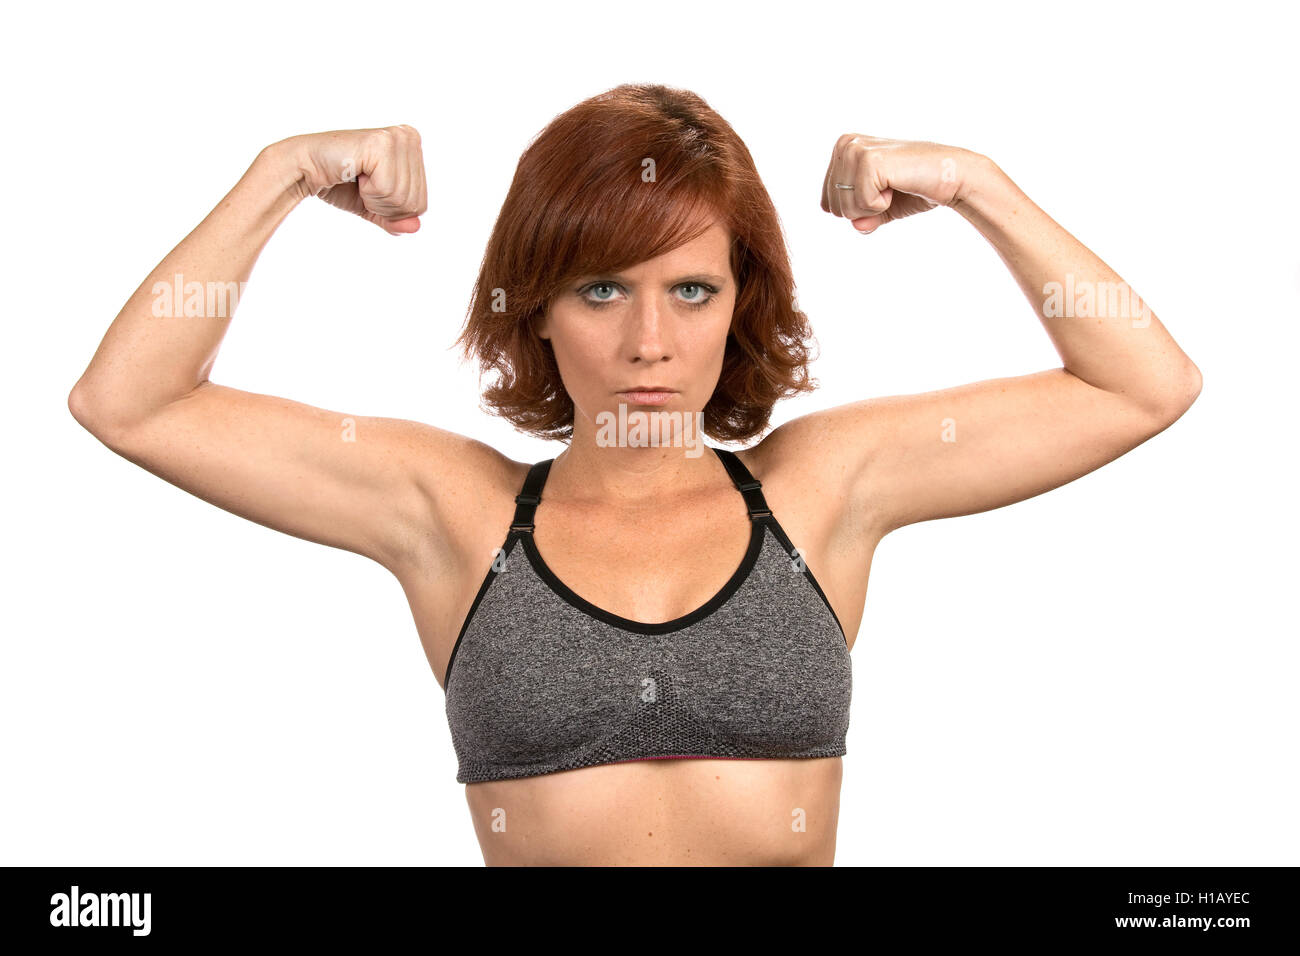 Sottile redheaded freckled donna si flette il suo bicipite muscoli indossando un reggiseno per lo sport. Foto Stock